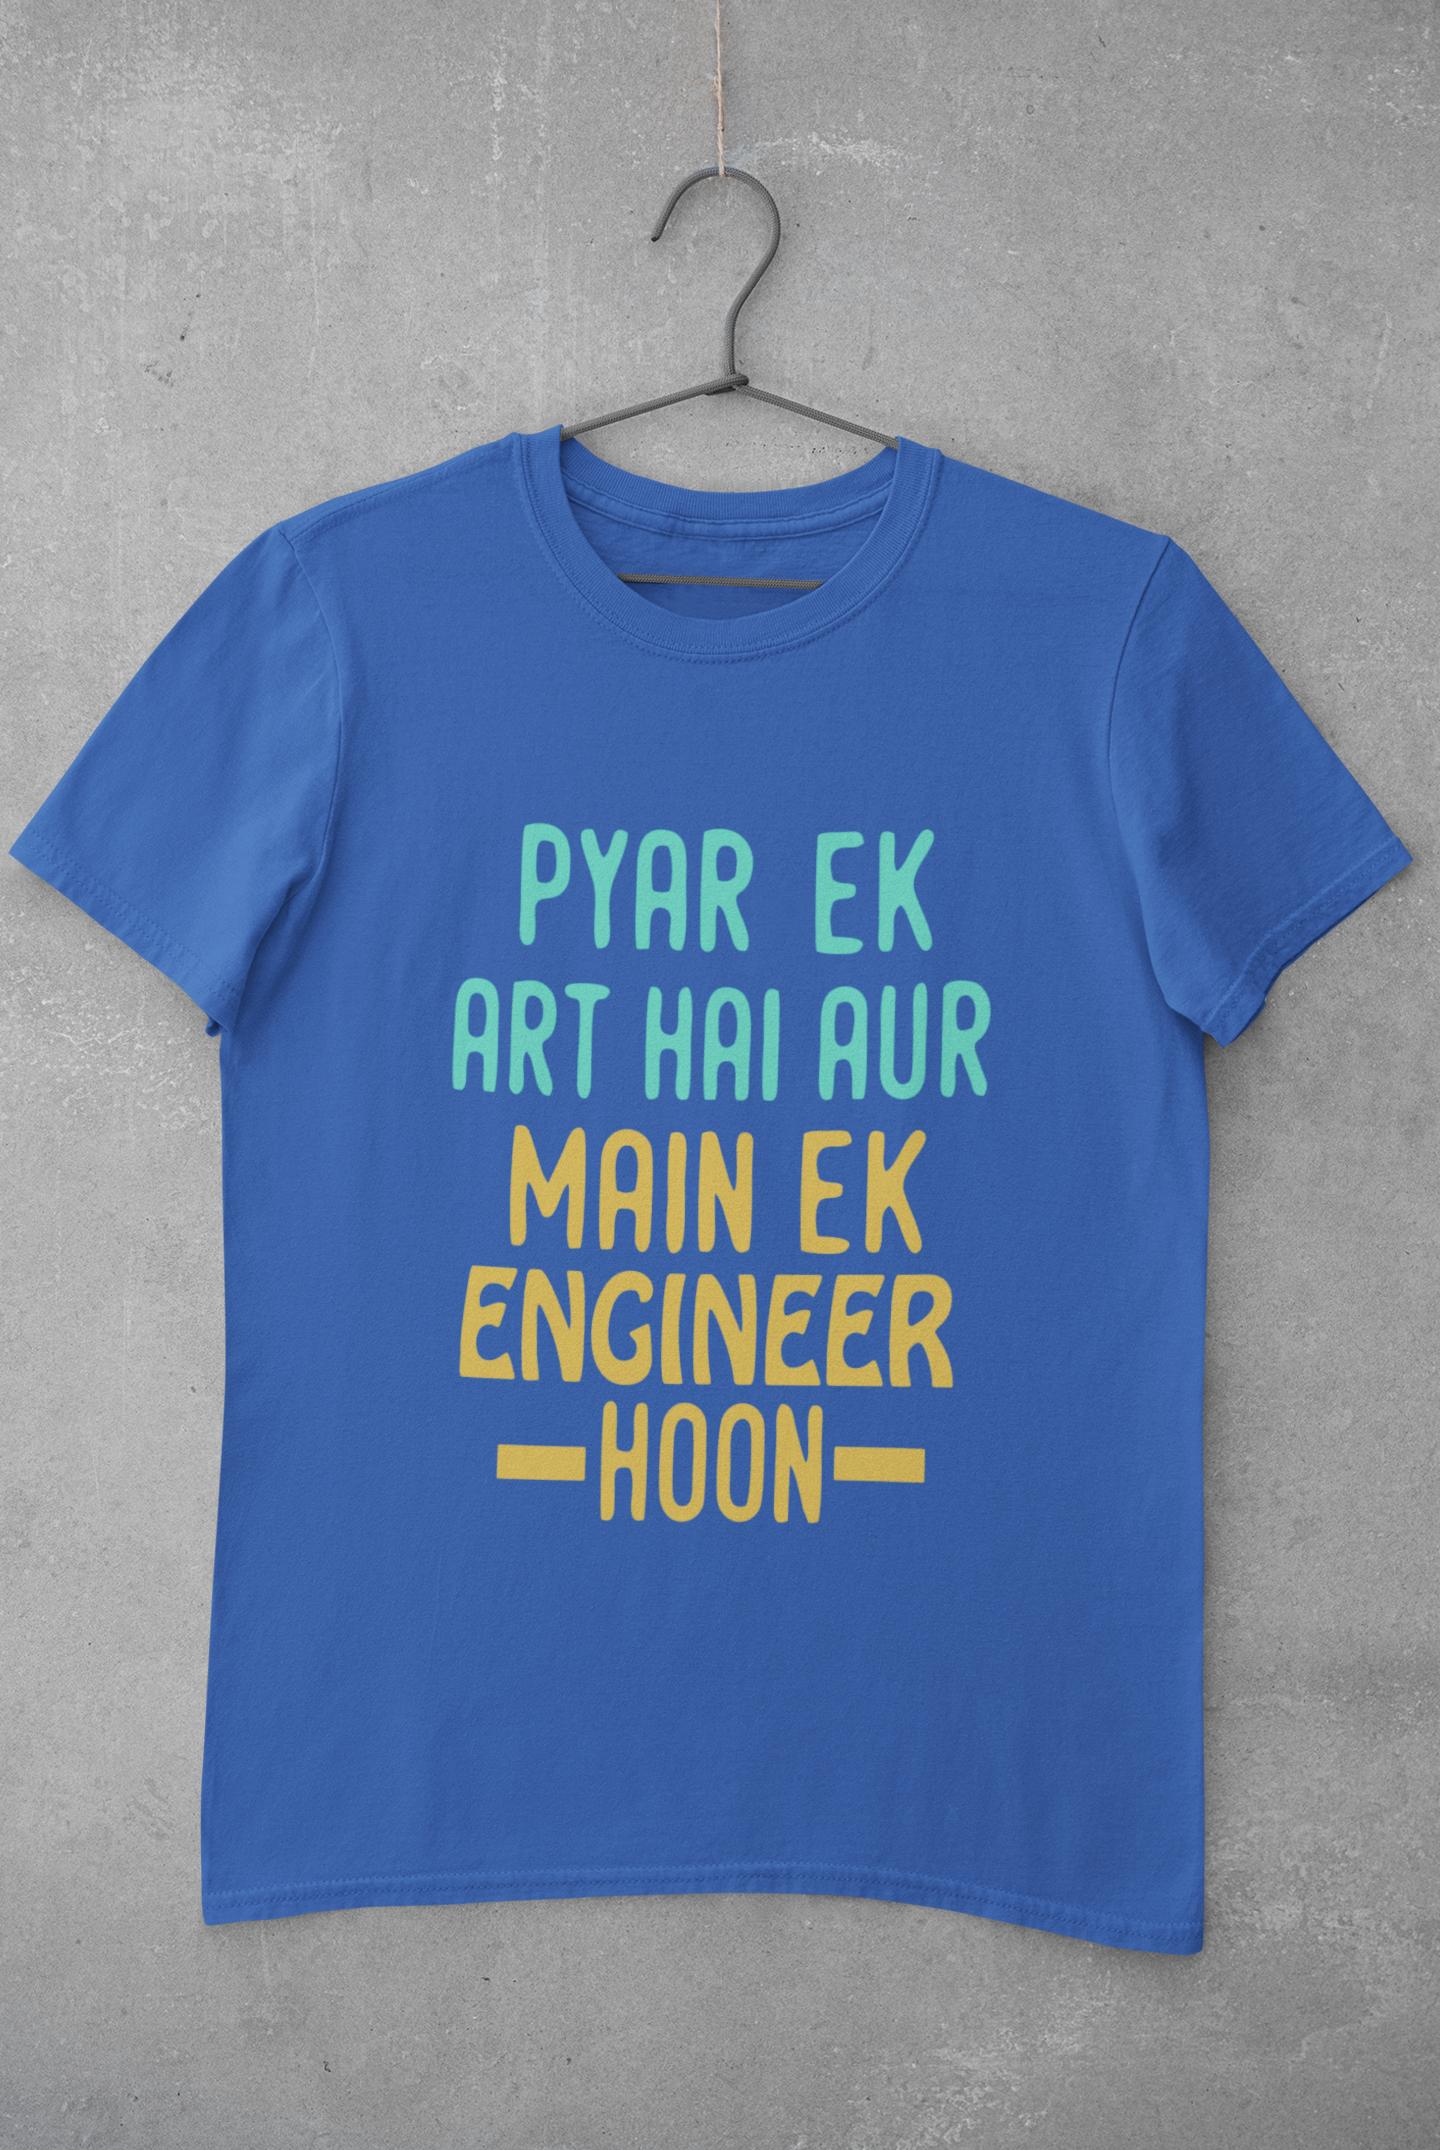 Pyaar Ek Art Hai Aur Main Ek Engineer Ho Women Half Sleeves T-shirt- FunkyTeesClub